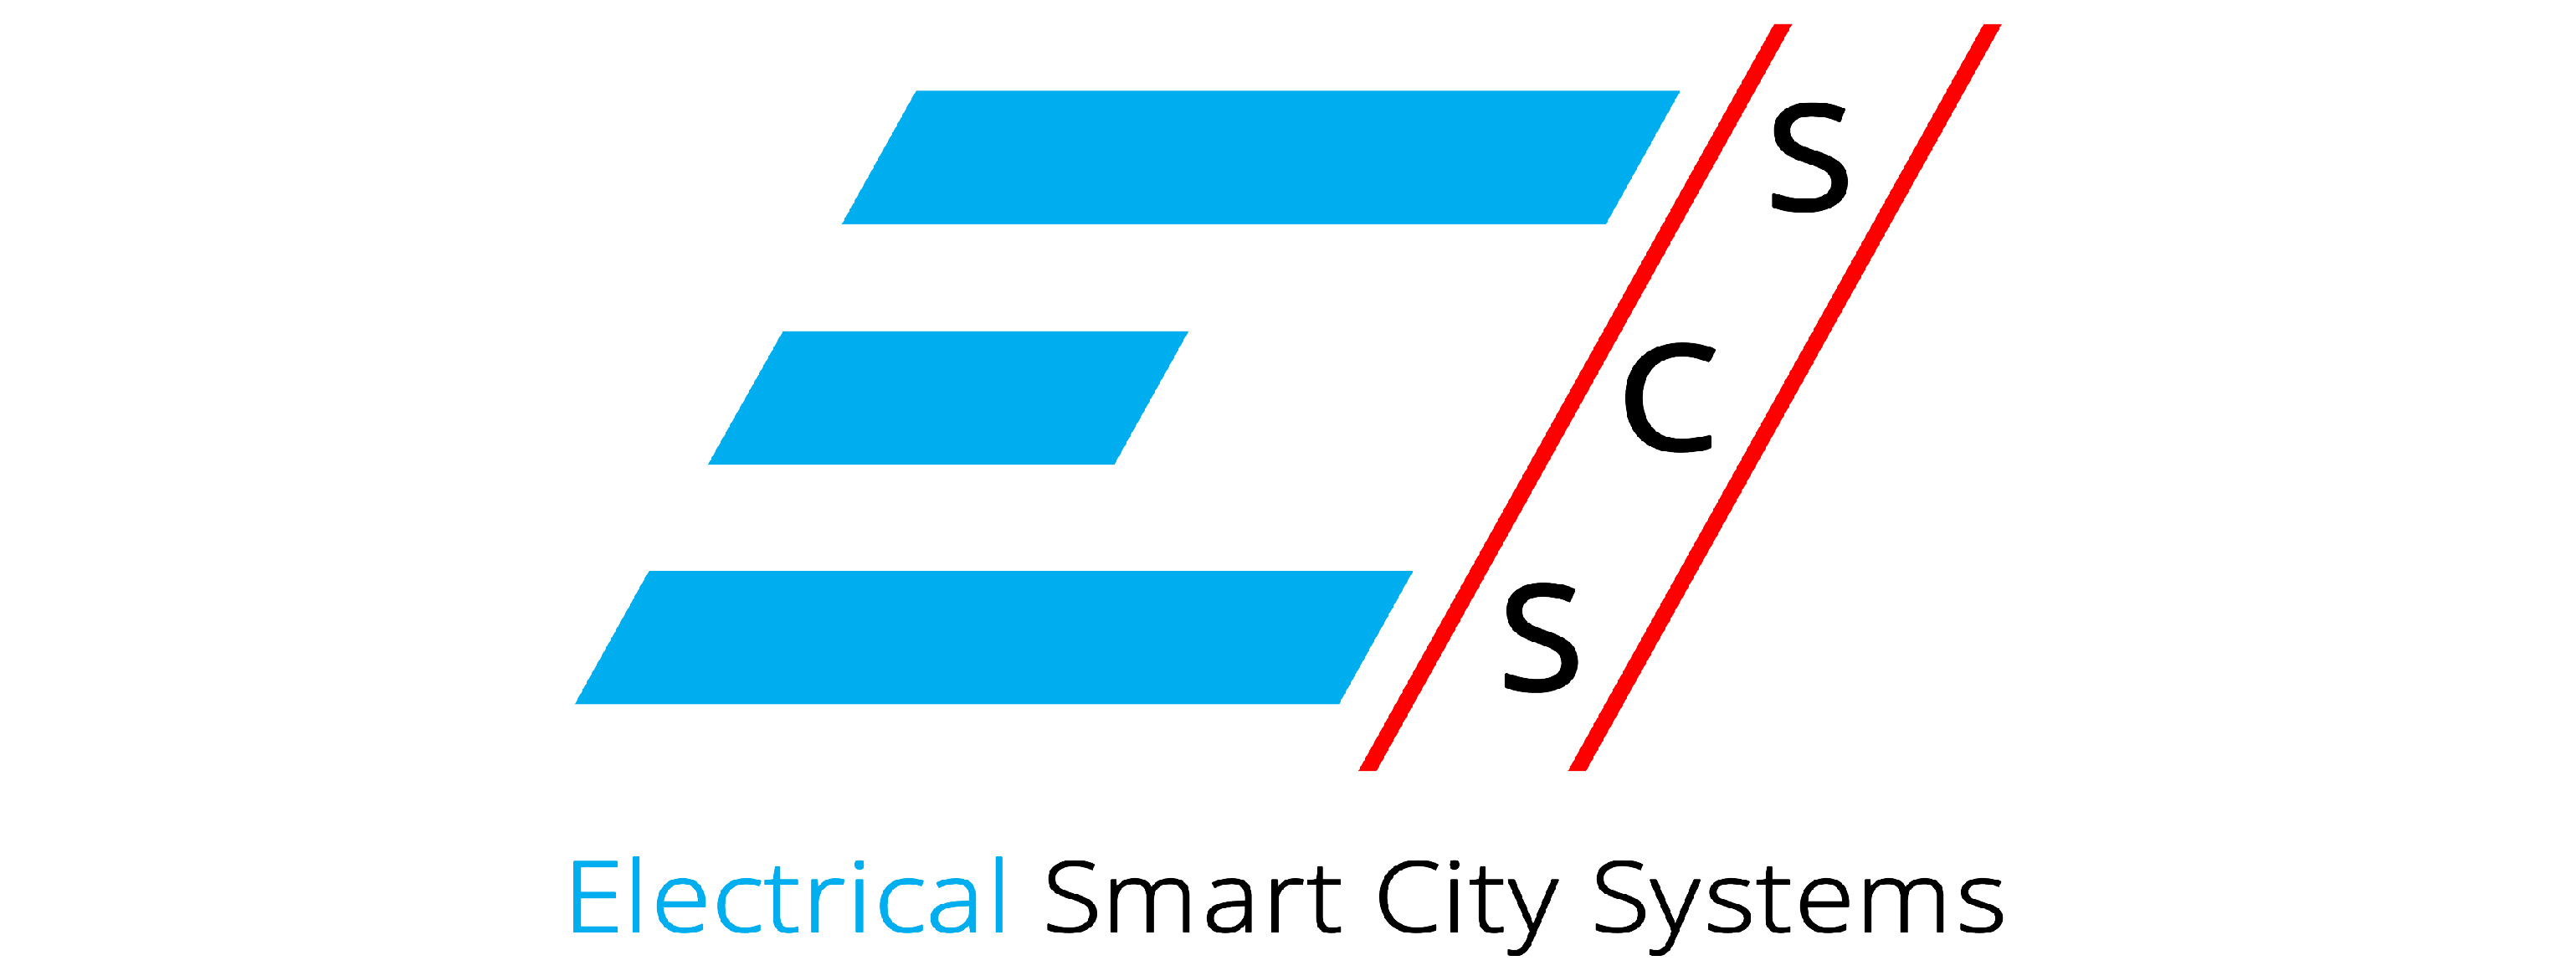 Lehrstuhl für Elektrische Smart City Systeme | ESCS